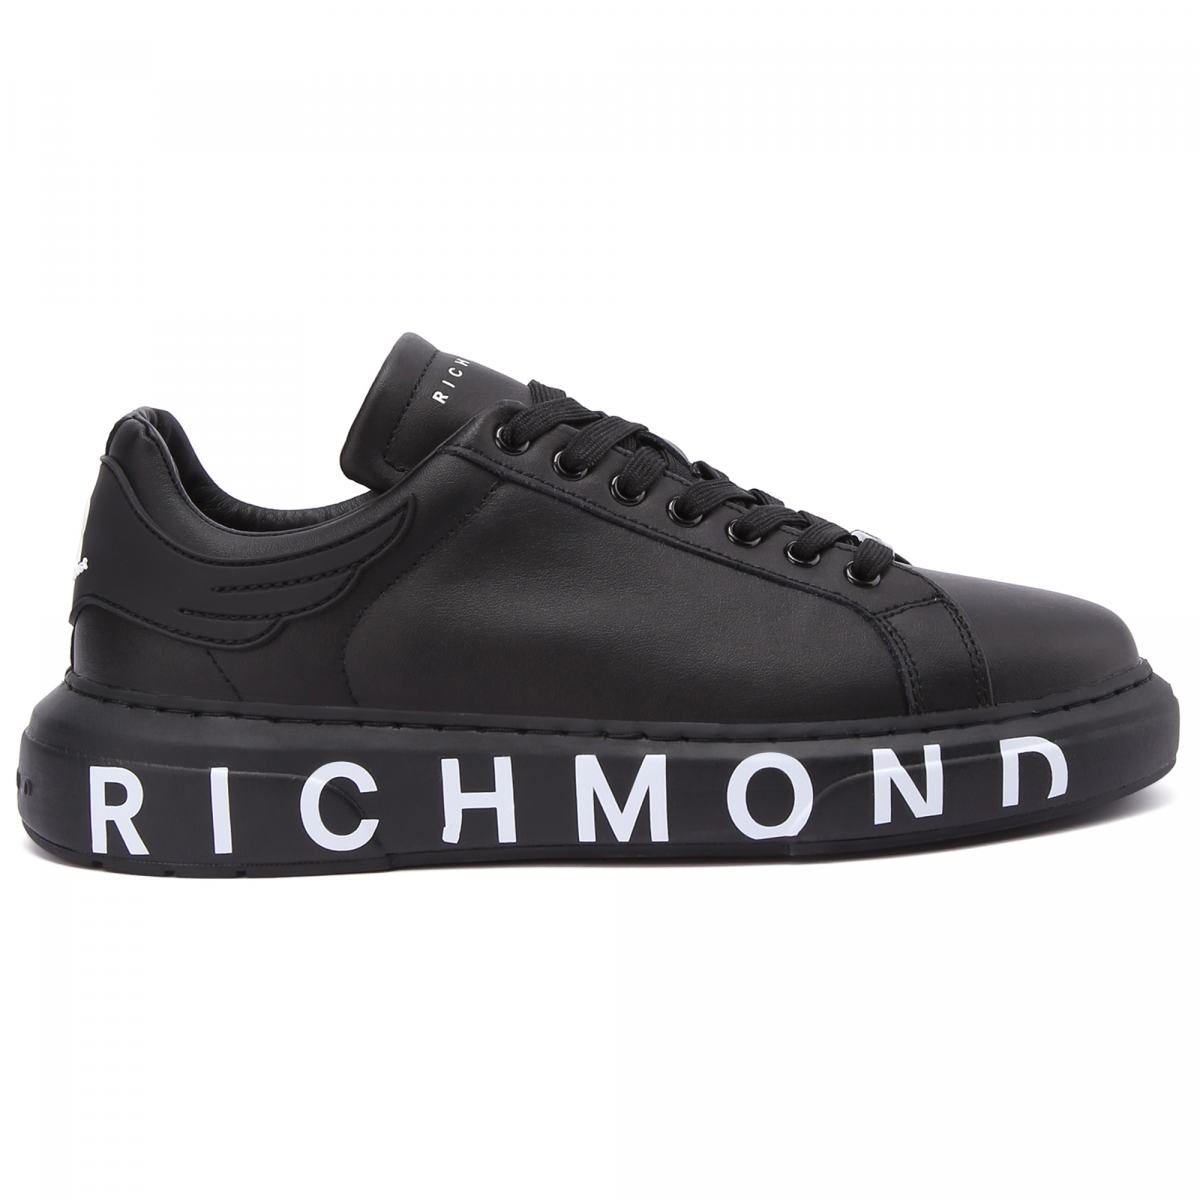 Richmond кроссовки. Кроссовки Джон Ричмонд. John Richmond кроссовки мужские. Richmond кроссовки Jr 3313. John Richmond обувь мужская кроссовки.